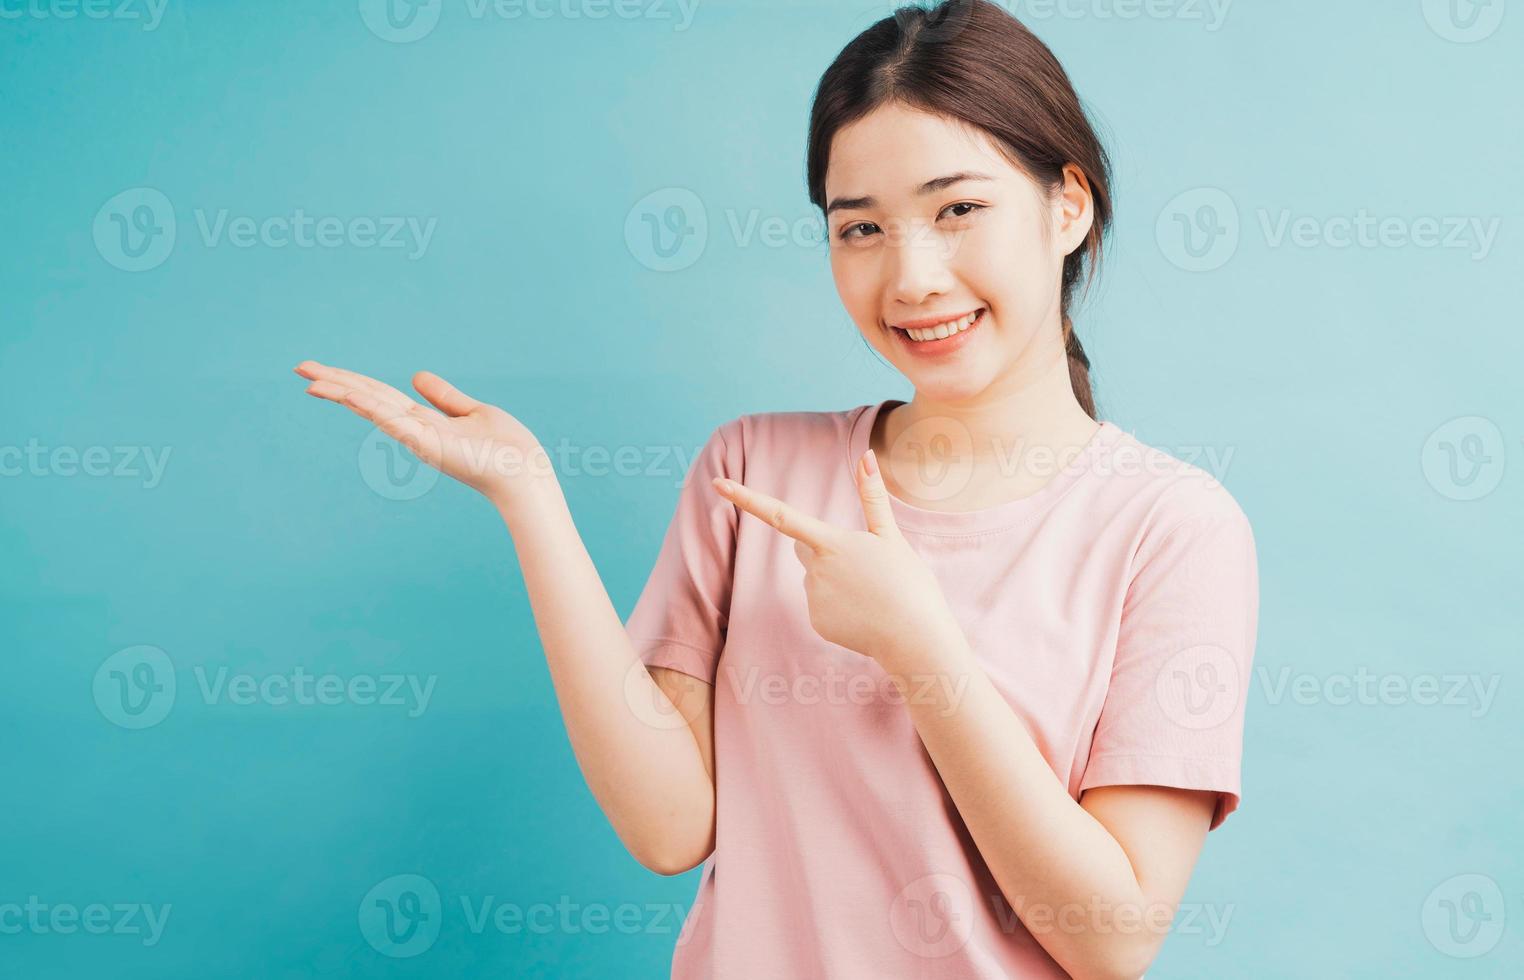 retrato de menina apontando para um lado contra um fundo azul foto